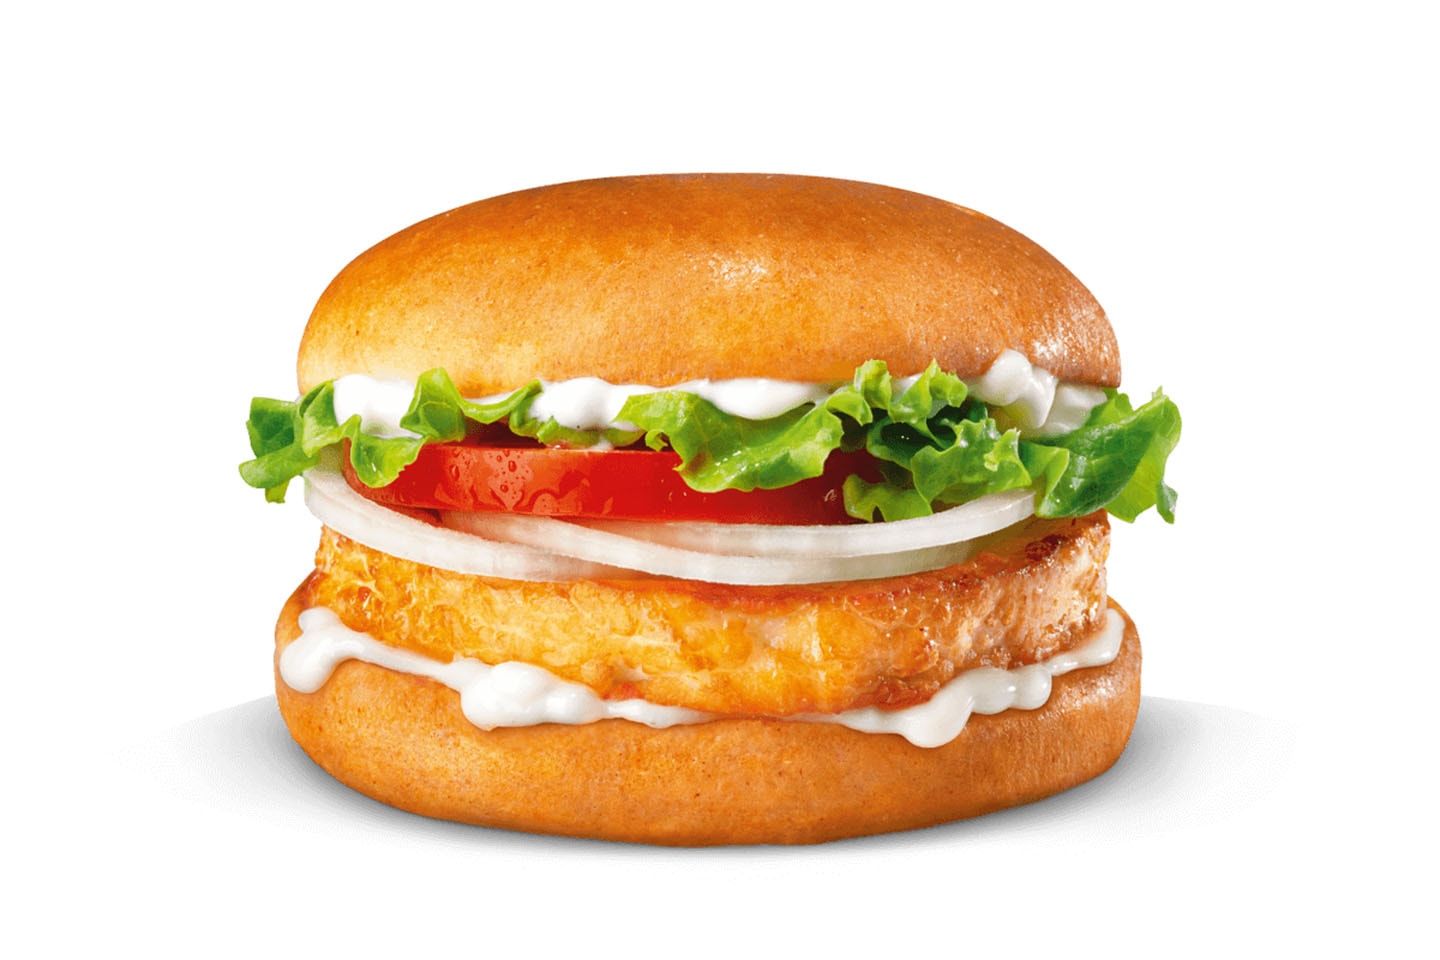 Burger King Meal inkl. Plusmeny, köp 2 betala för 1 (4 av 5)